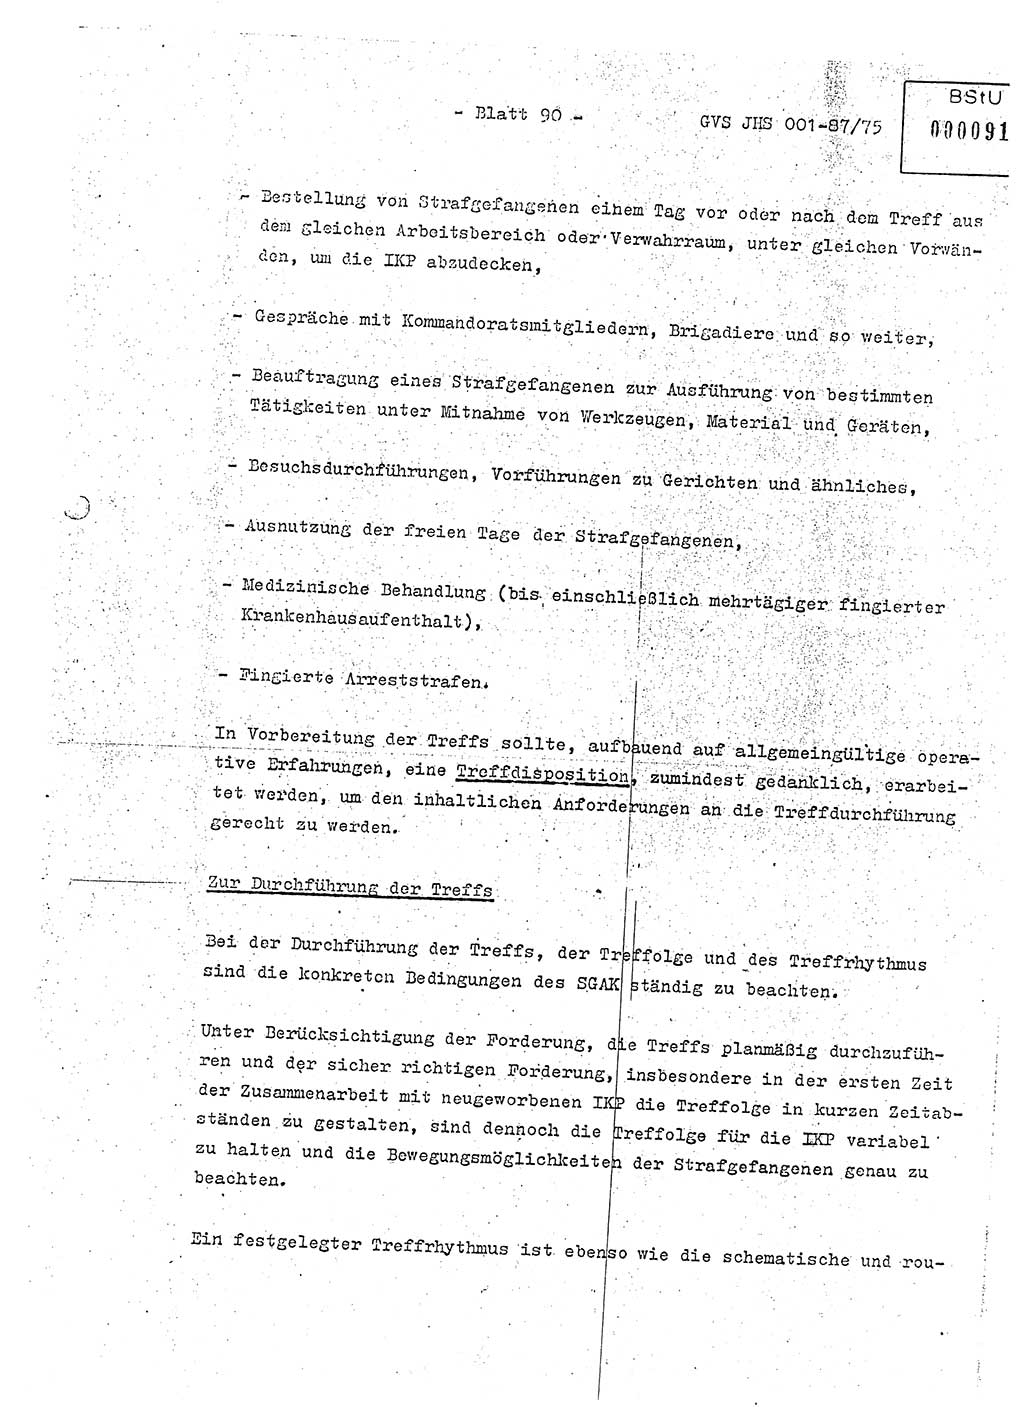 Diplomarbeit Hauptmann Volkmar Heinz (Abt. ⅩⅣ), Oberleutnant Lothar Rüdiger (BV Lpz. Abt. Ⅺ), Ministerium für Staatssicherheit (MfS) [Deutsche Demokratische Republik (DDR)], Juristische Hochschule (JHS), Geheime Verschlußsache (GVS) o001-87/75, Potsdam 1975, Seite 90 (Dipl.-Arb. MfS DDR JHS GVS o001-87/75 1975, S. 90)